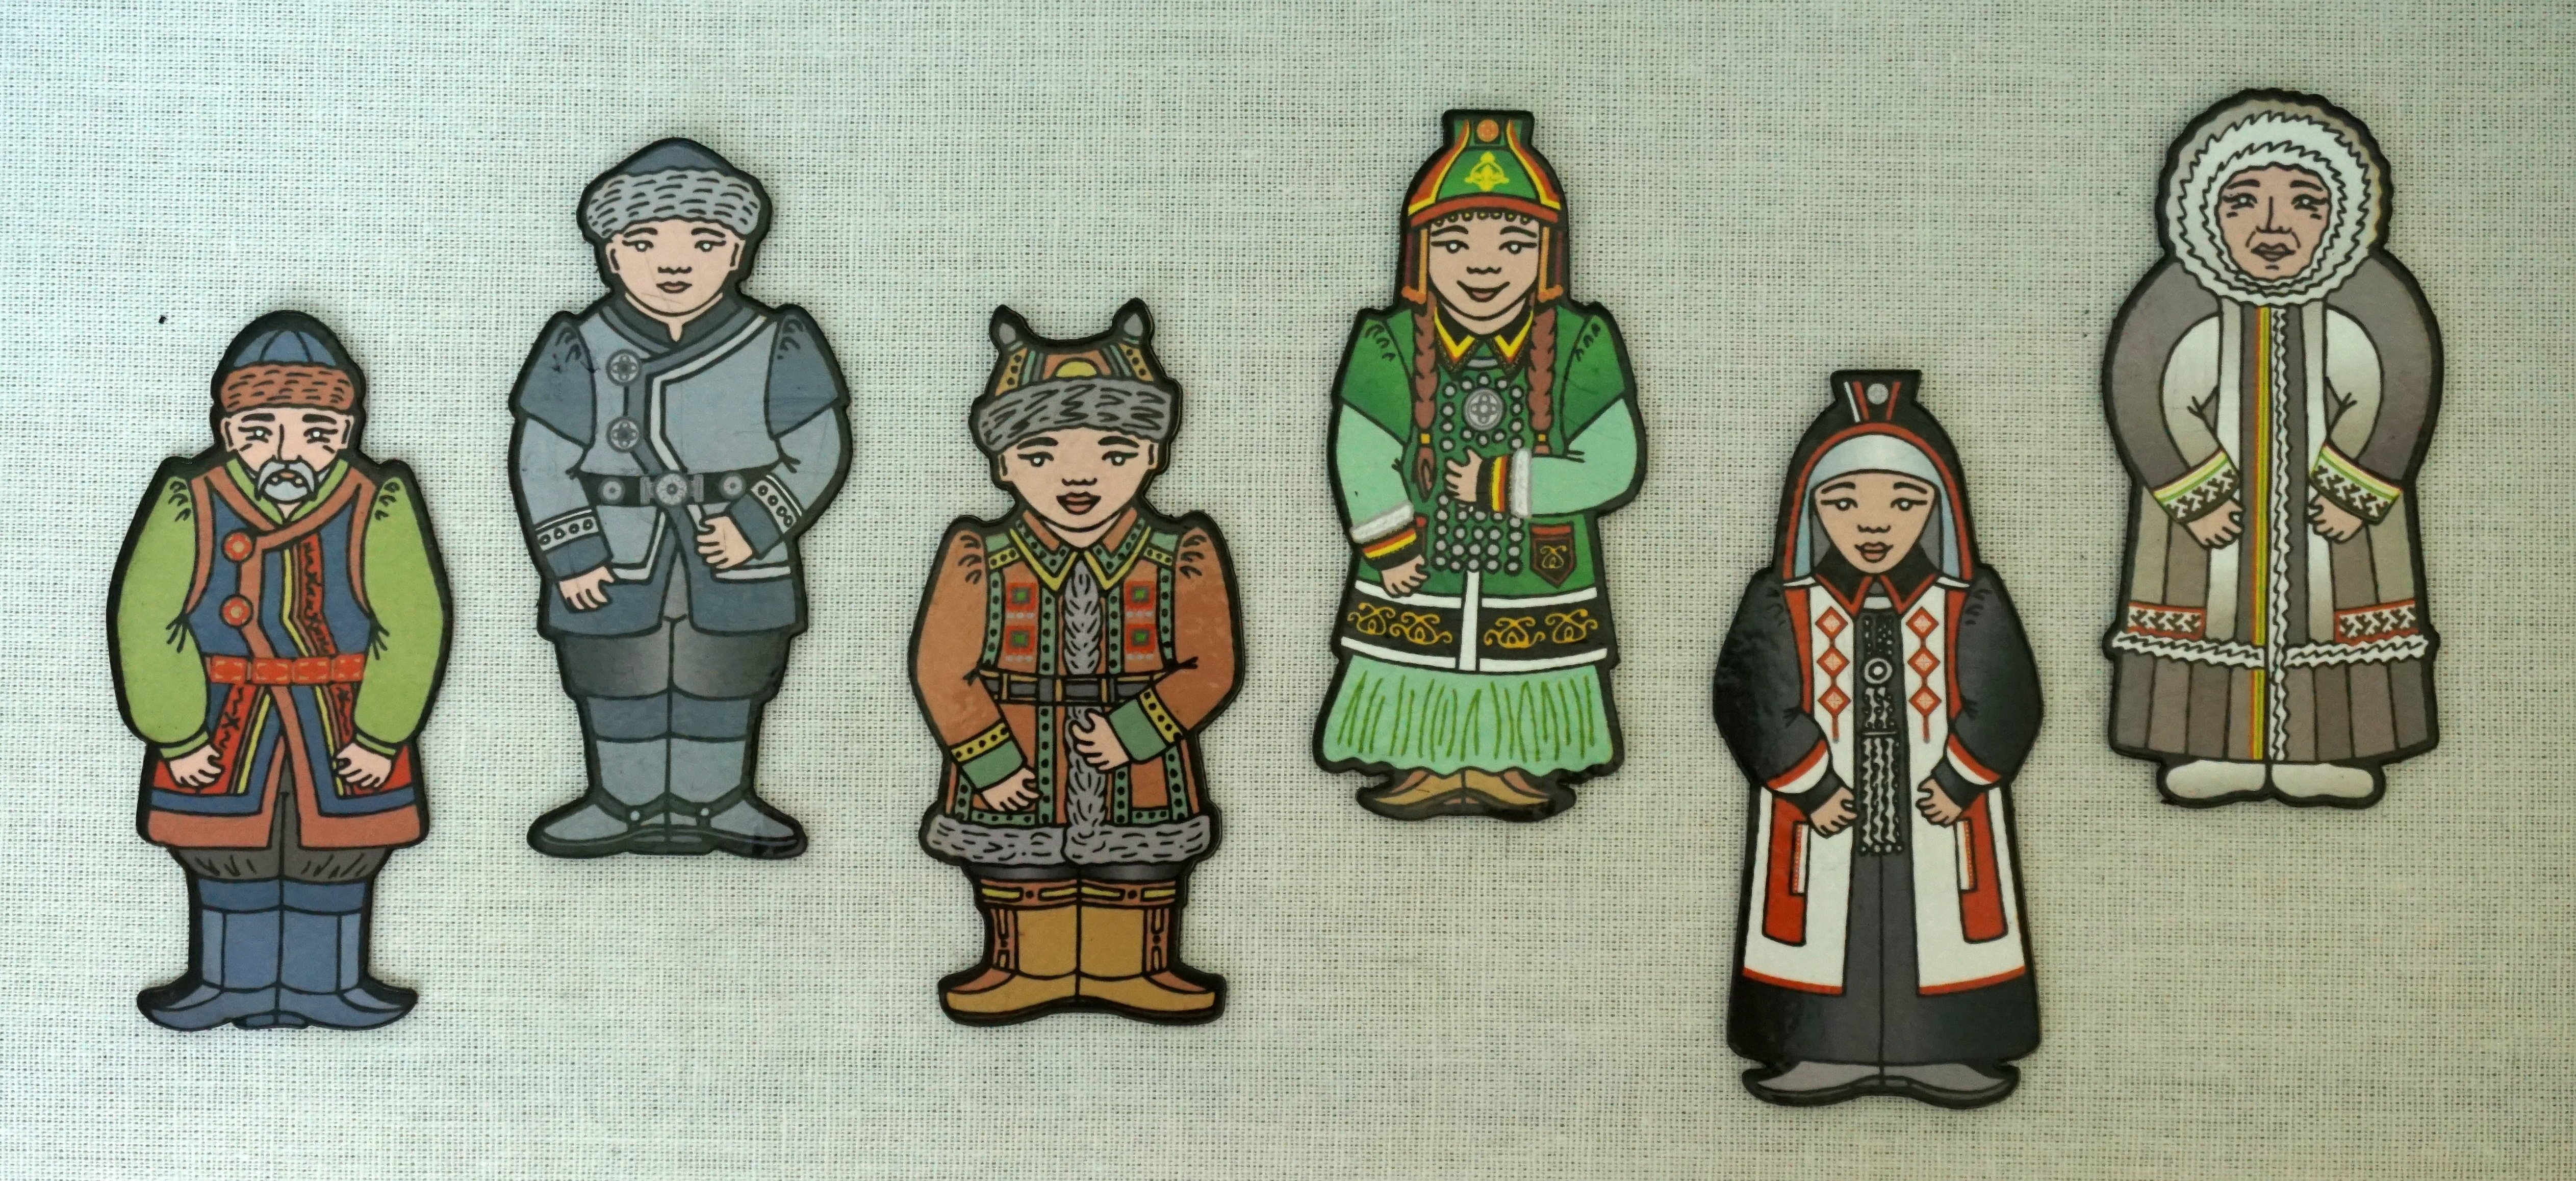 Сказки народов якутии в детских рисунках фото